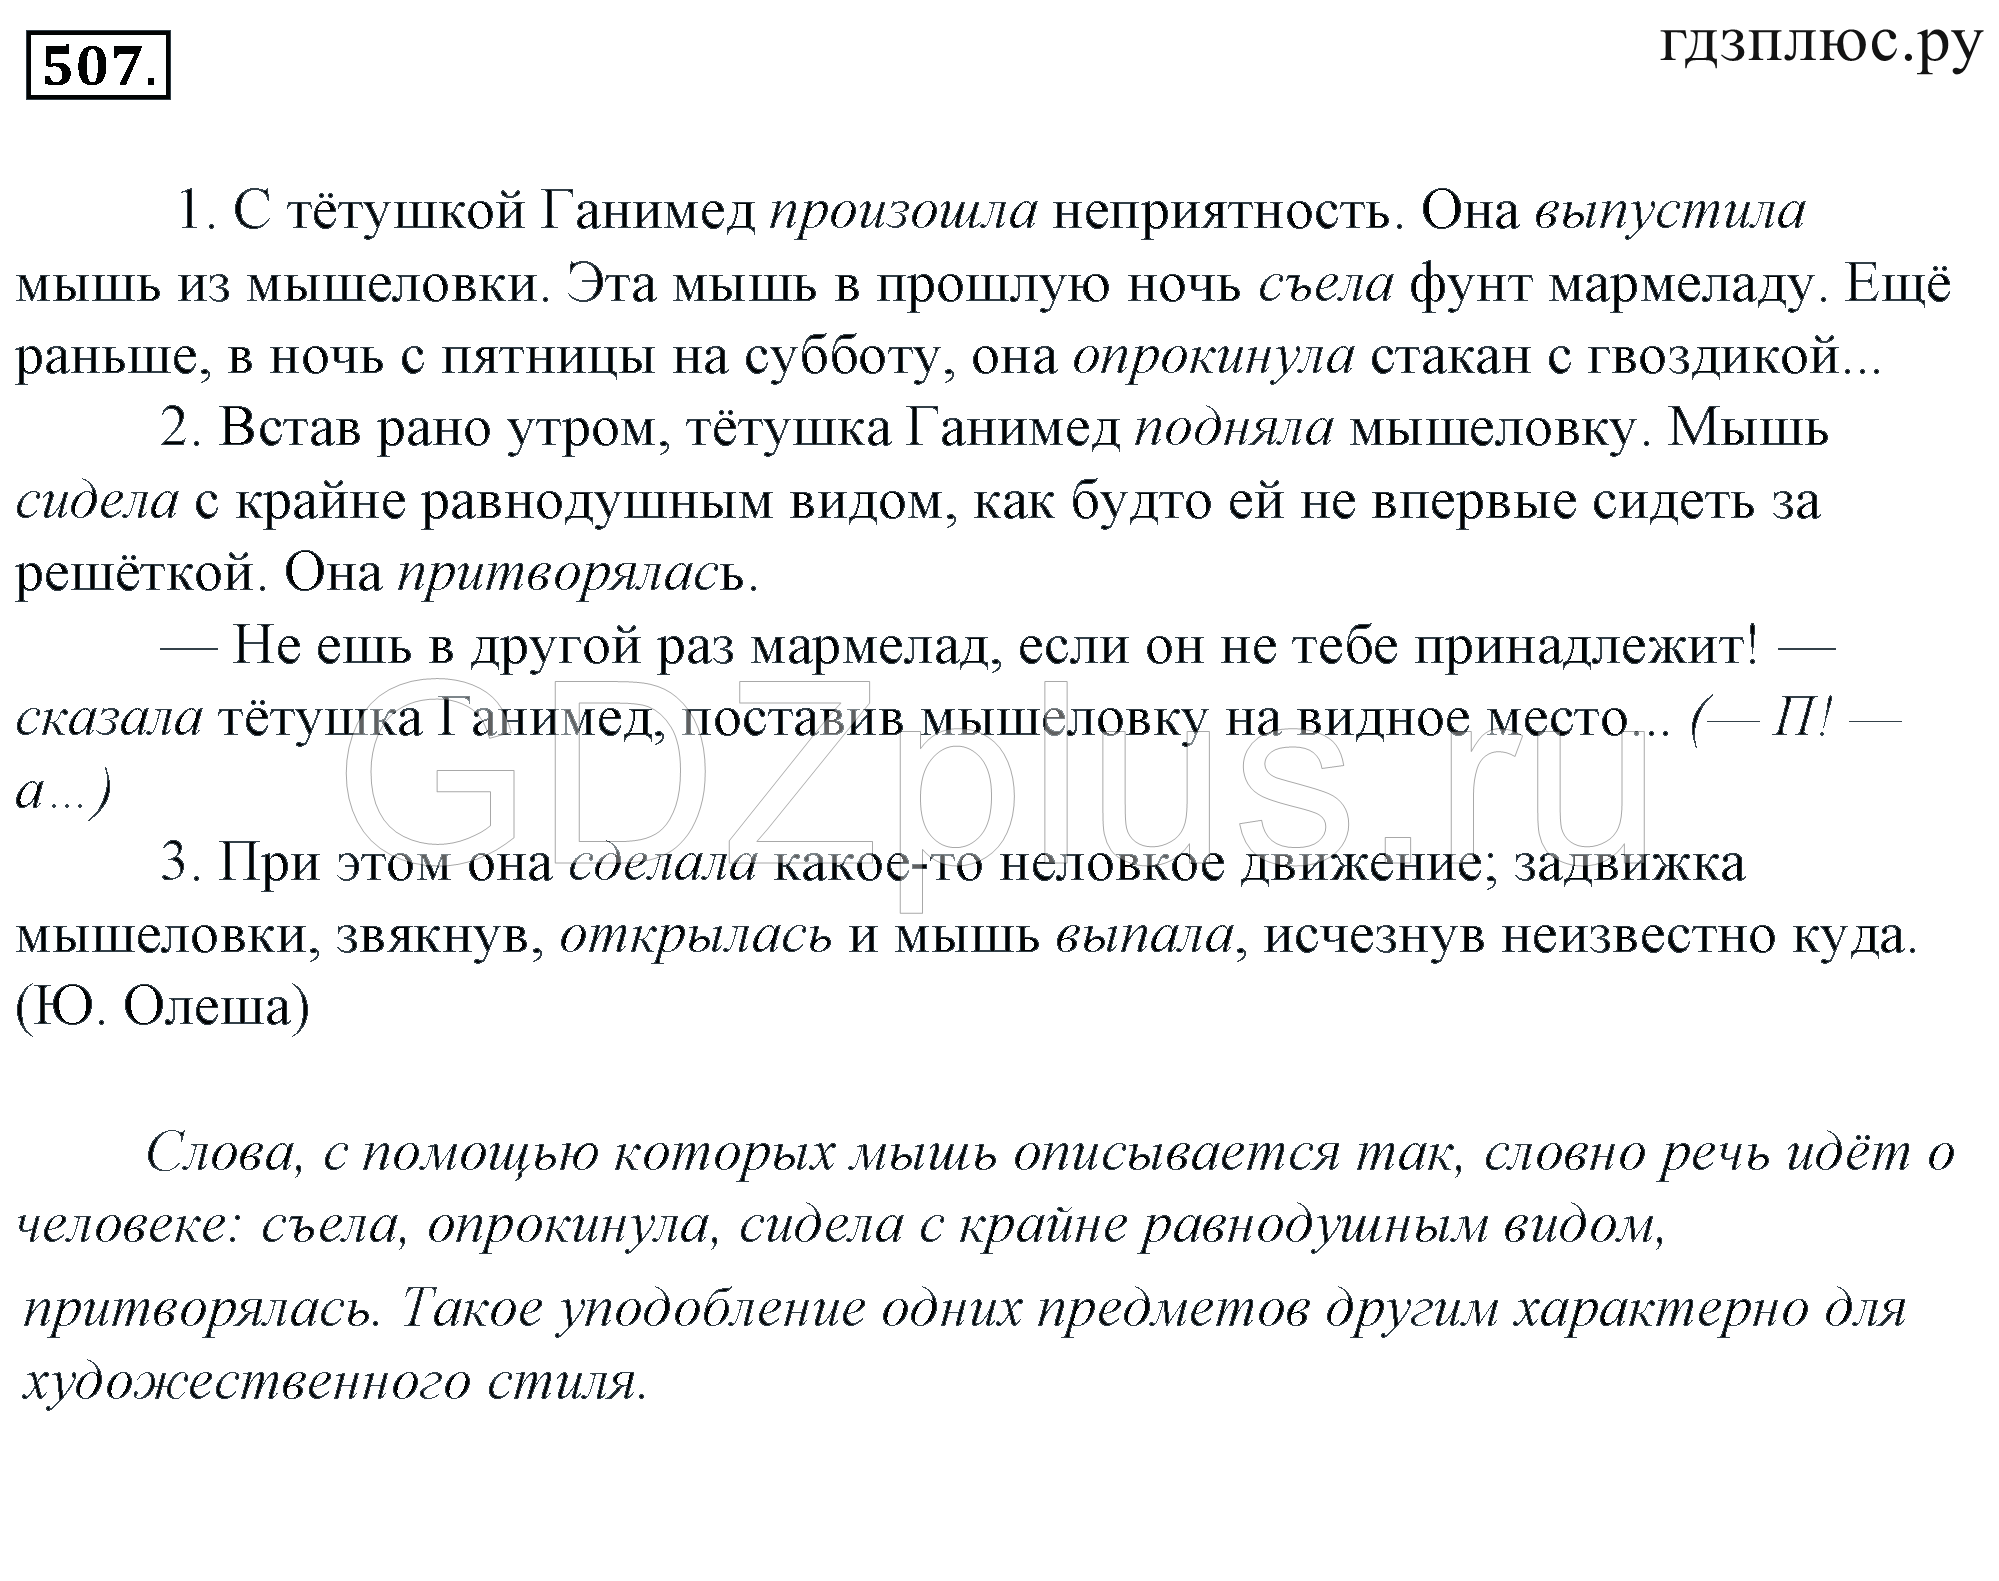 Телеграмма задание по русскому языку фото 92